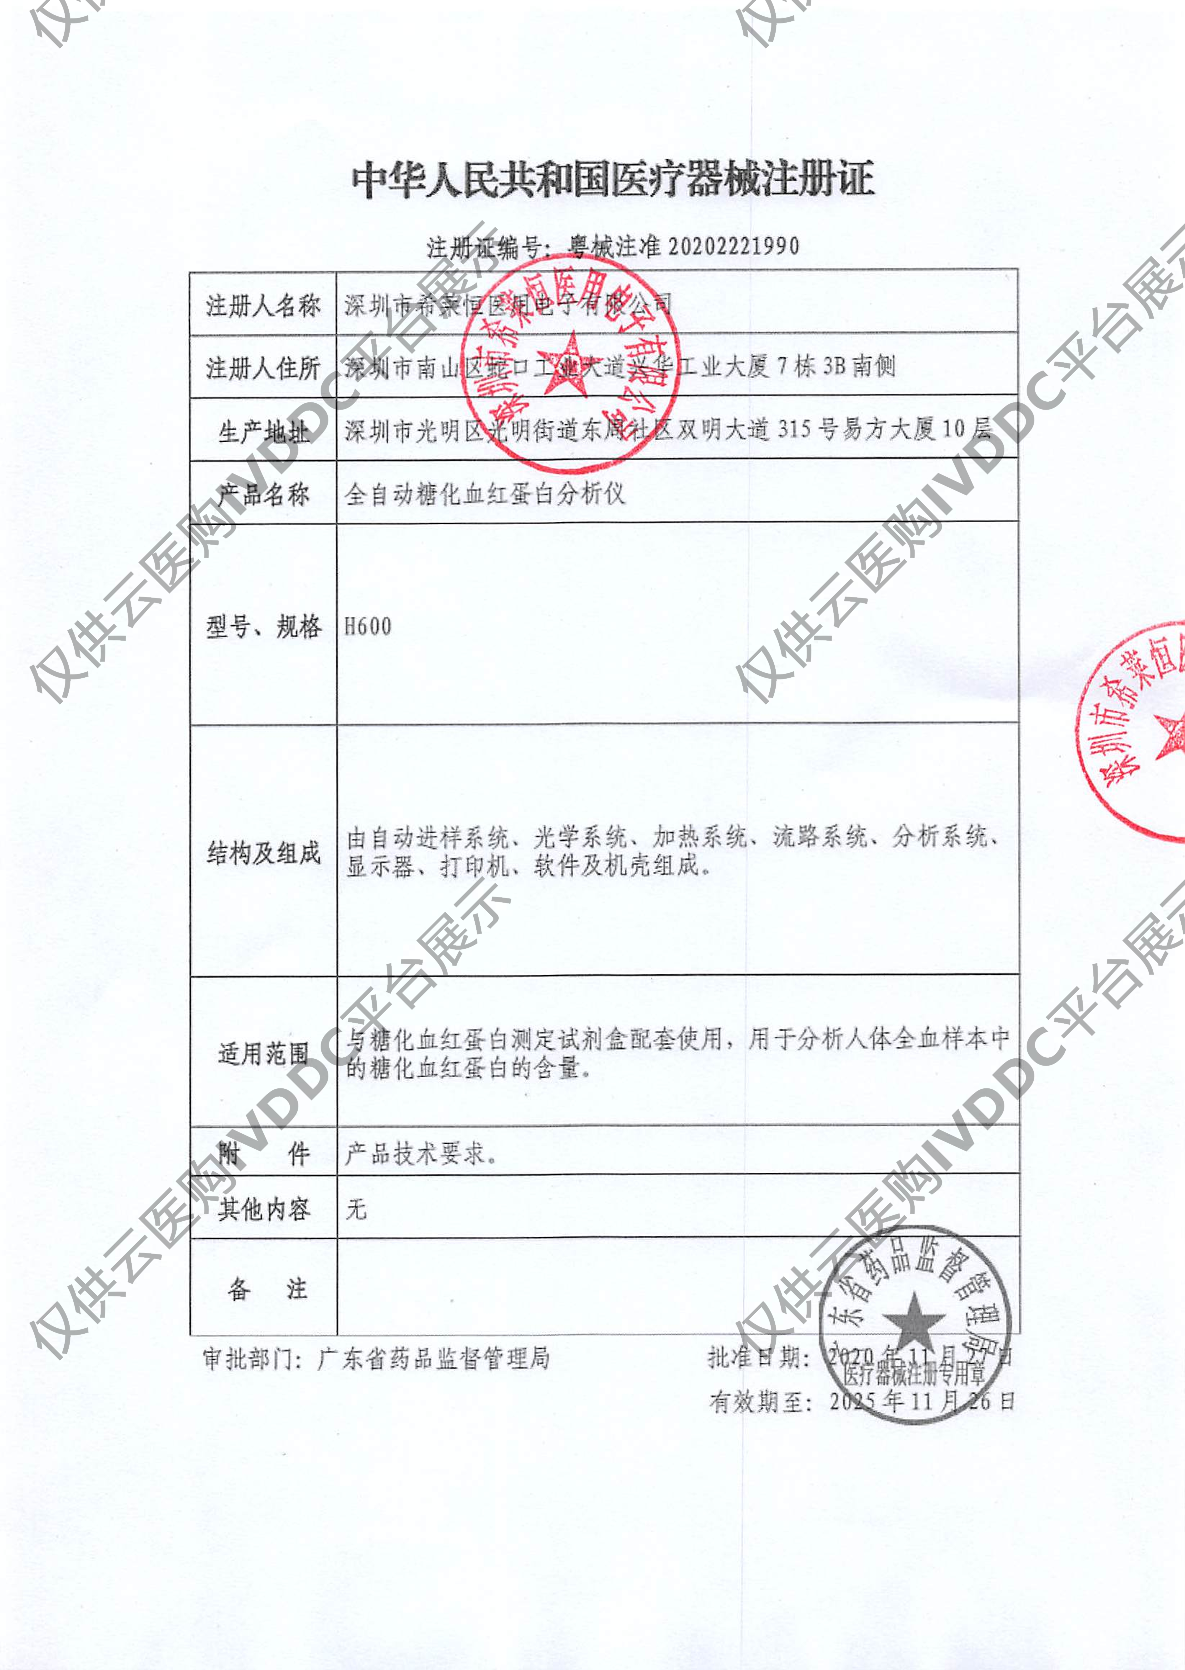 【希莱恒】全自动糖化血红蛋白分析仪H600注册证